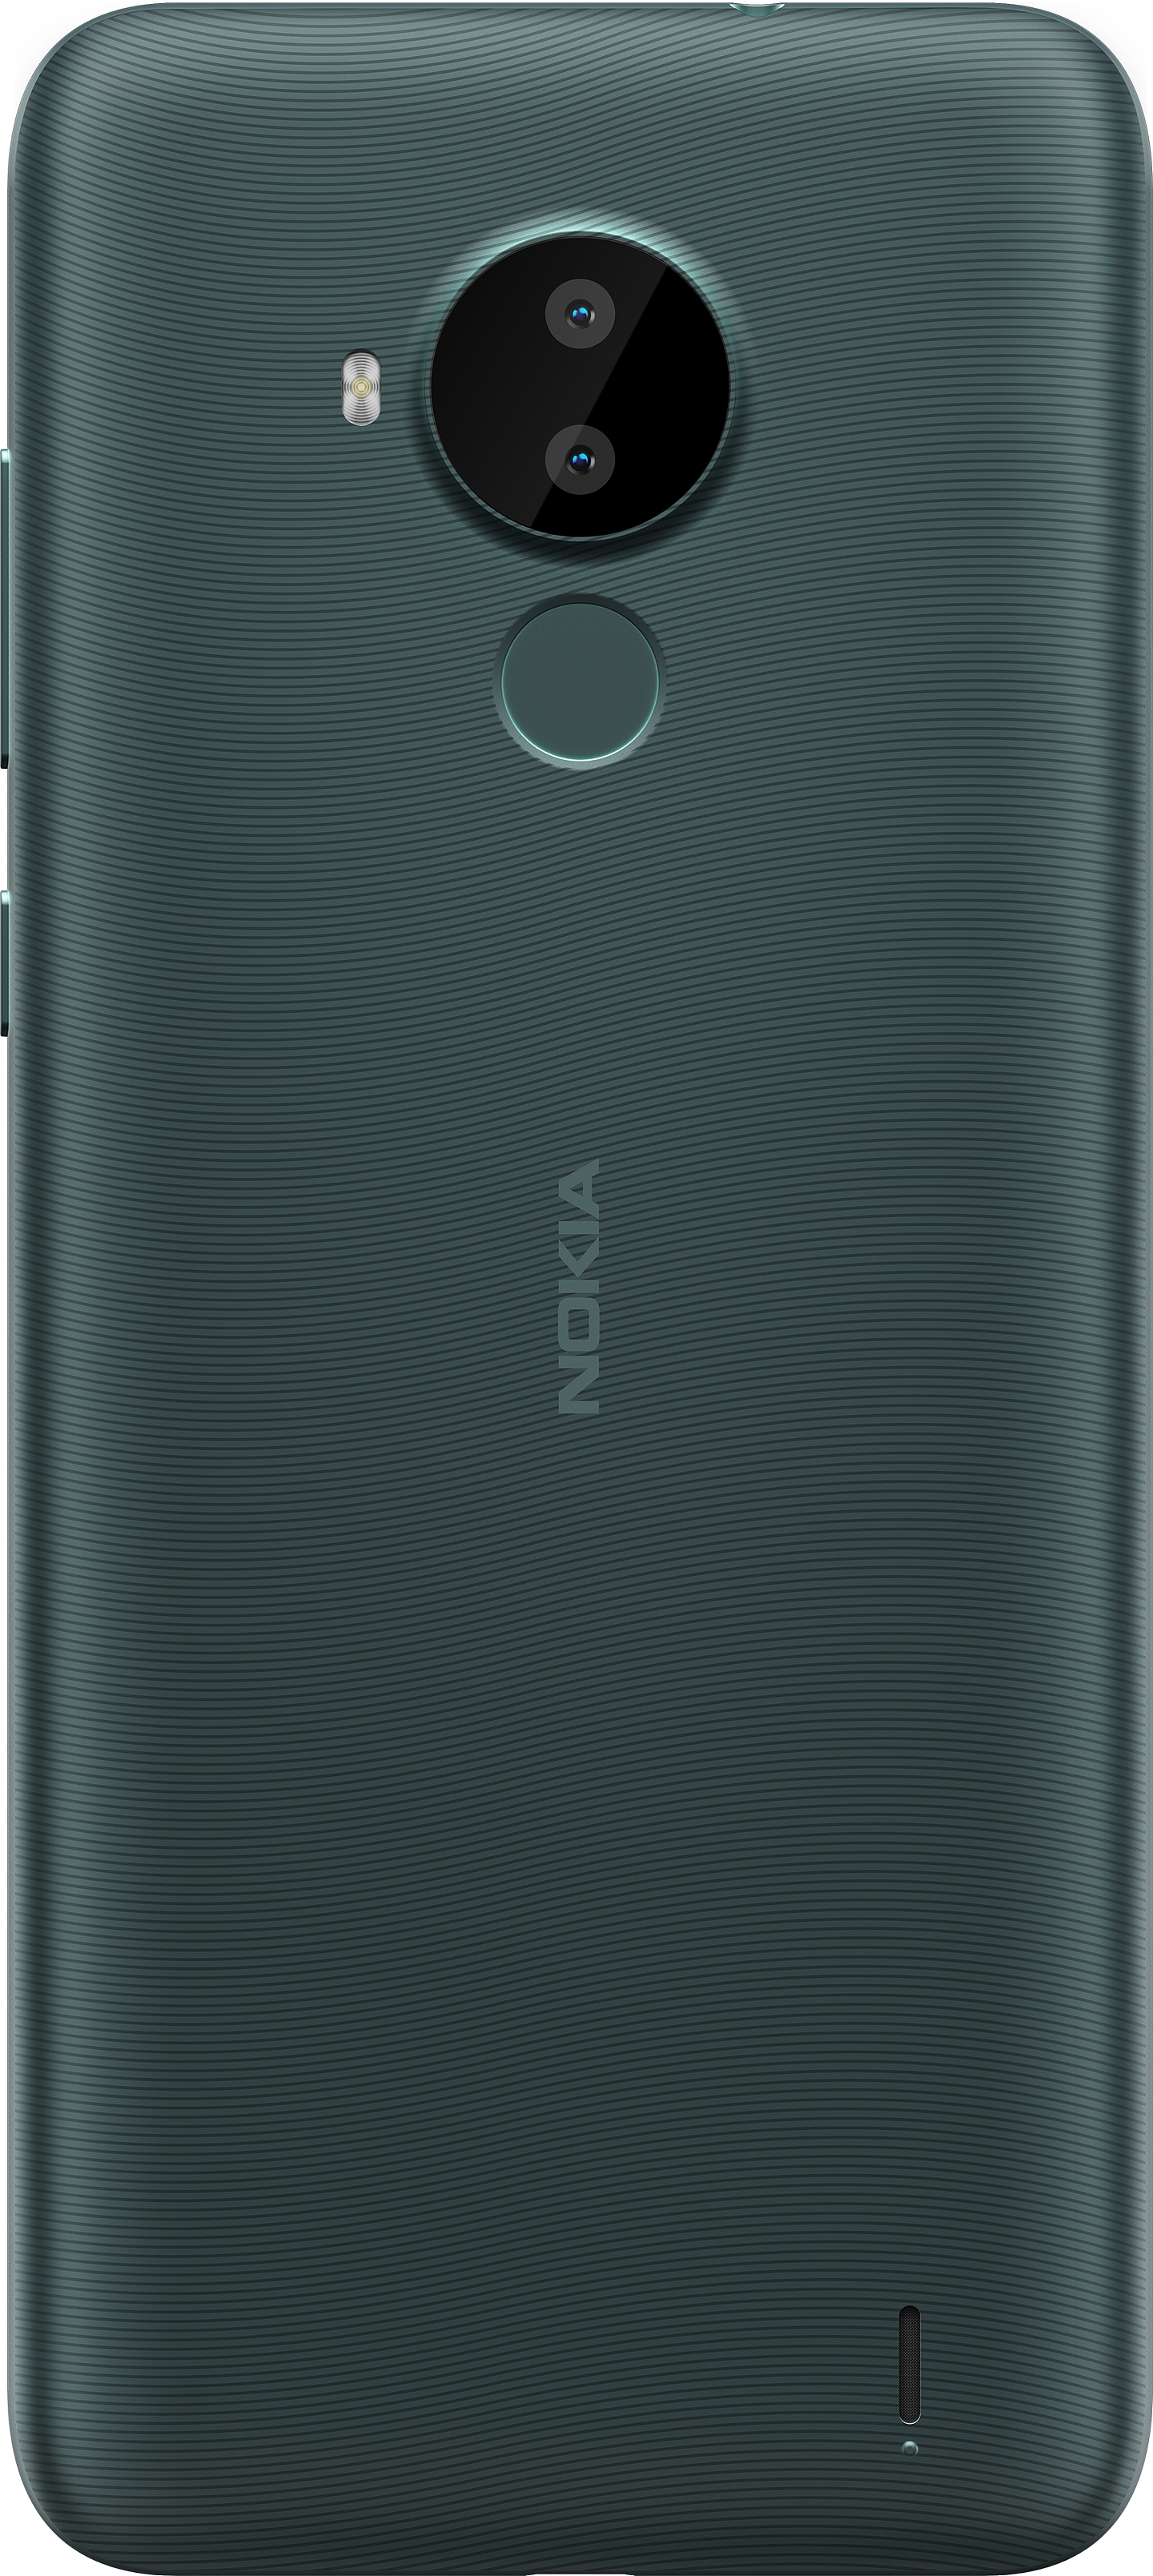 诺基亚海外发布 Nokia C30 和 6310 手机，2+32GB 版本约 760 元 - 1